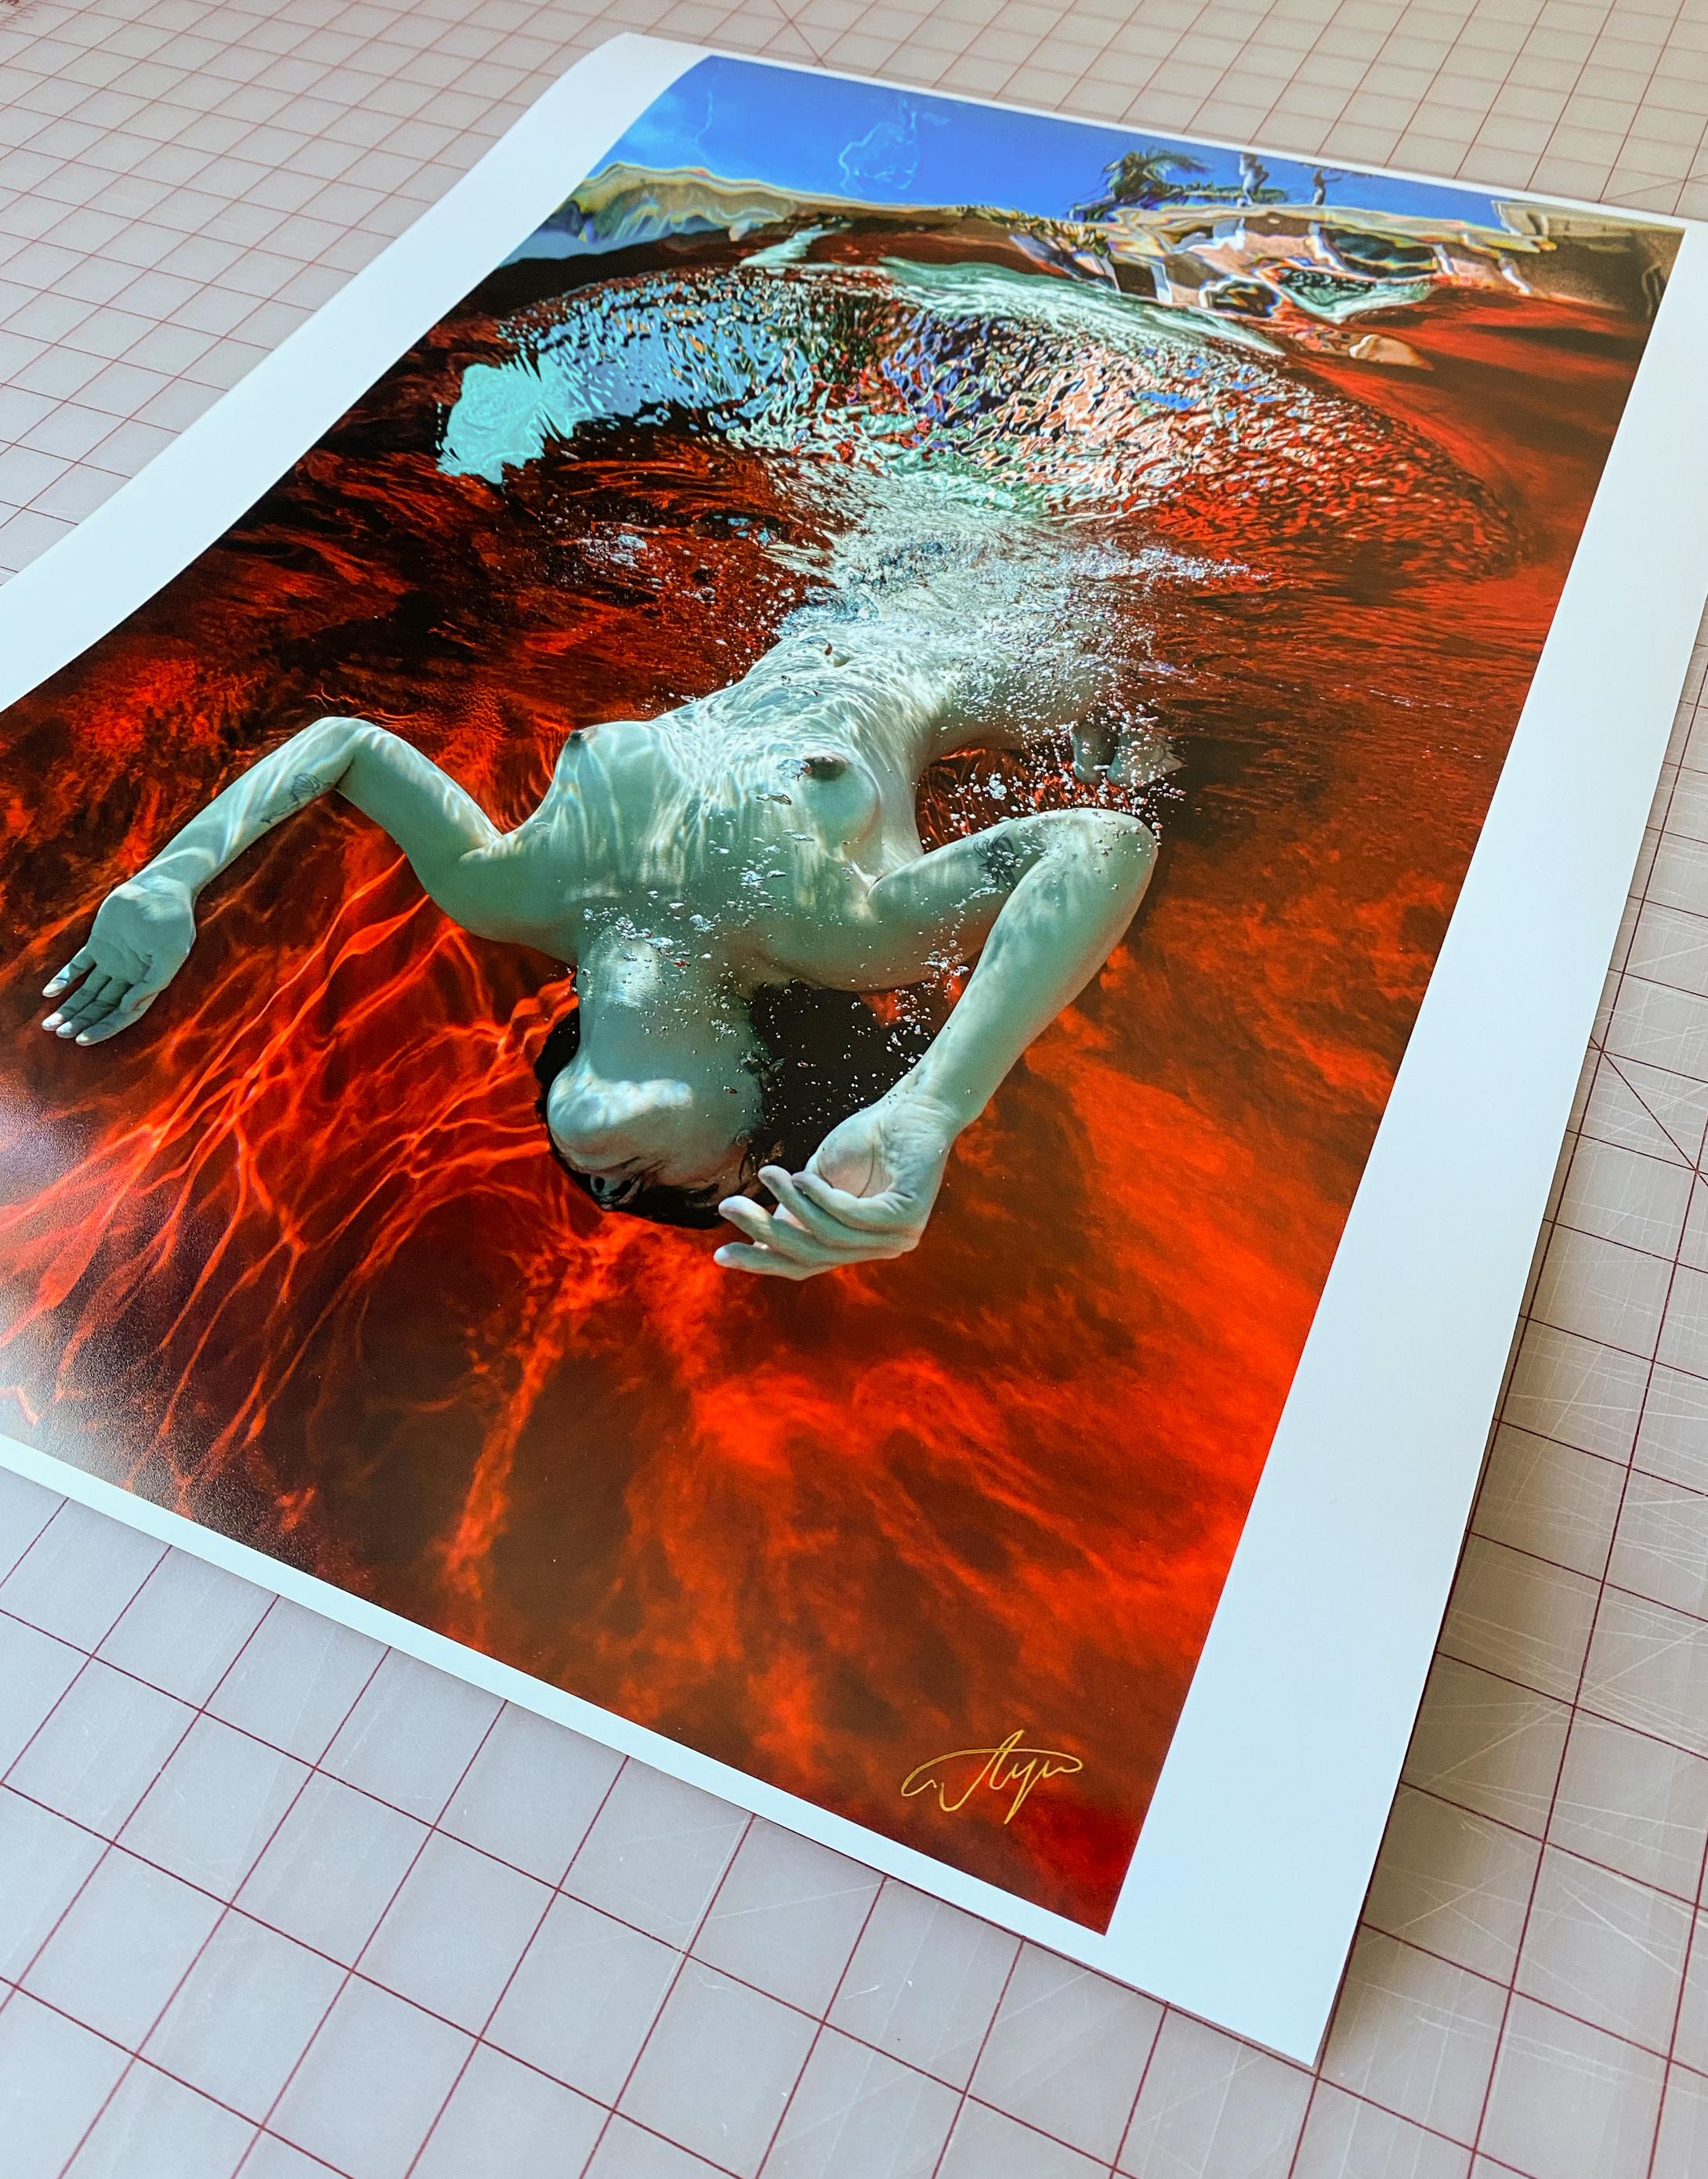 Summer - photographie de nu subaquatique - pigment d'archives 35